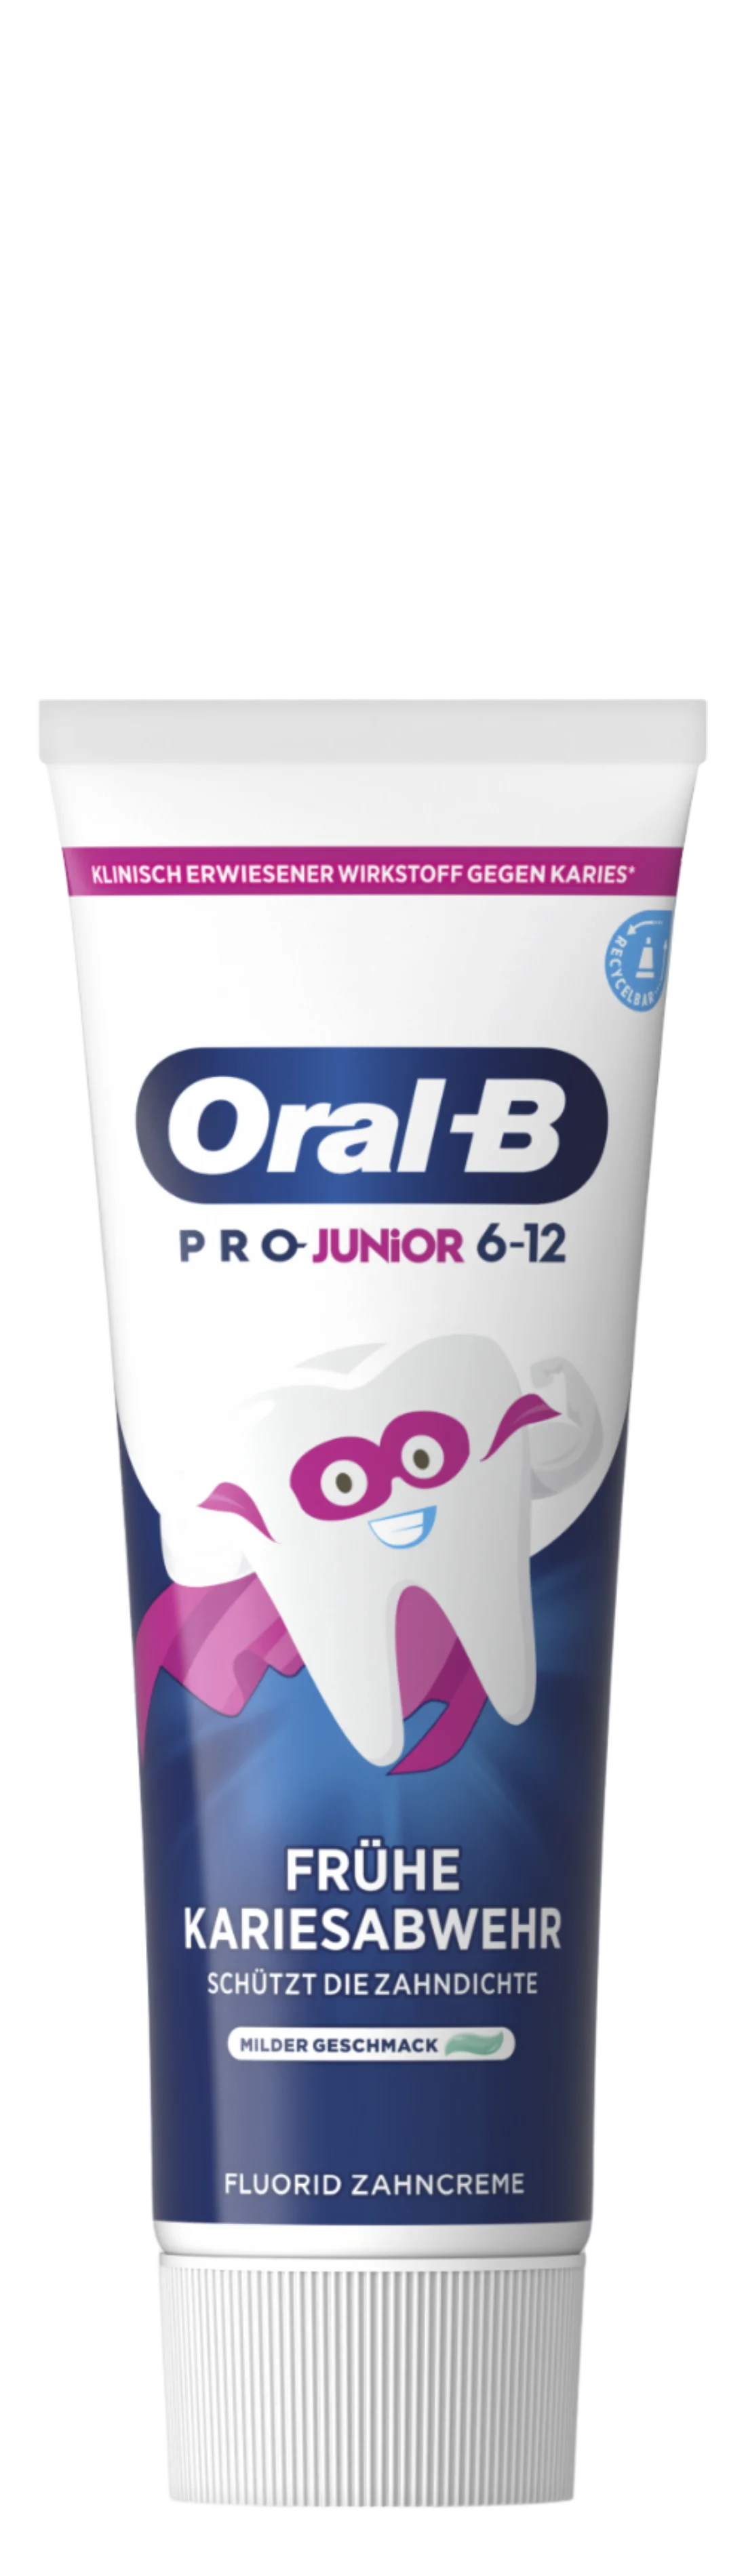 Oral-B Pro Junior Zahncreme, 6-12 Jahre - Main 